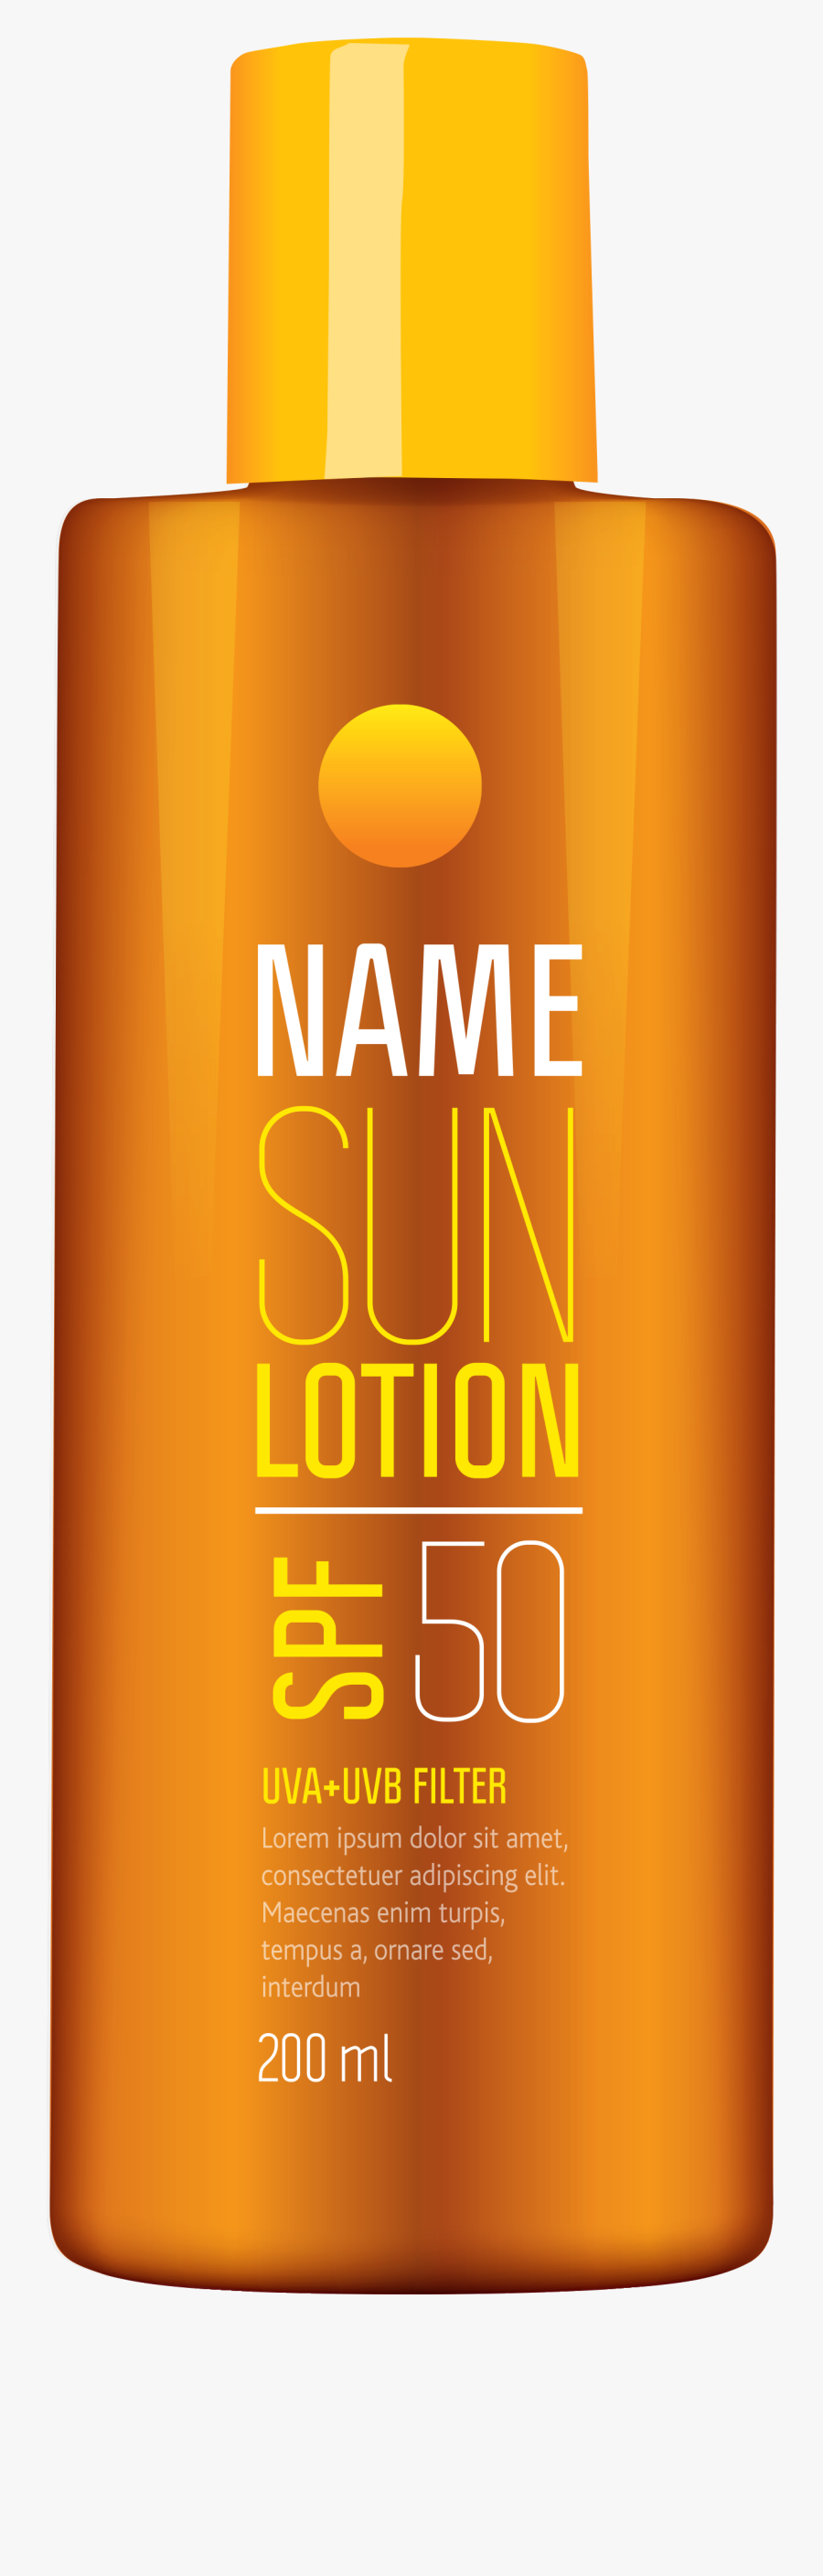 Sun Lotion Tube Png Clipart Picture - Clip Art, Transparent Clipart